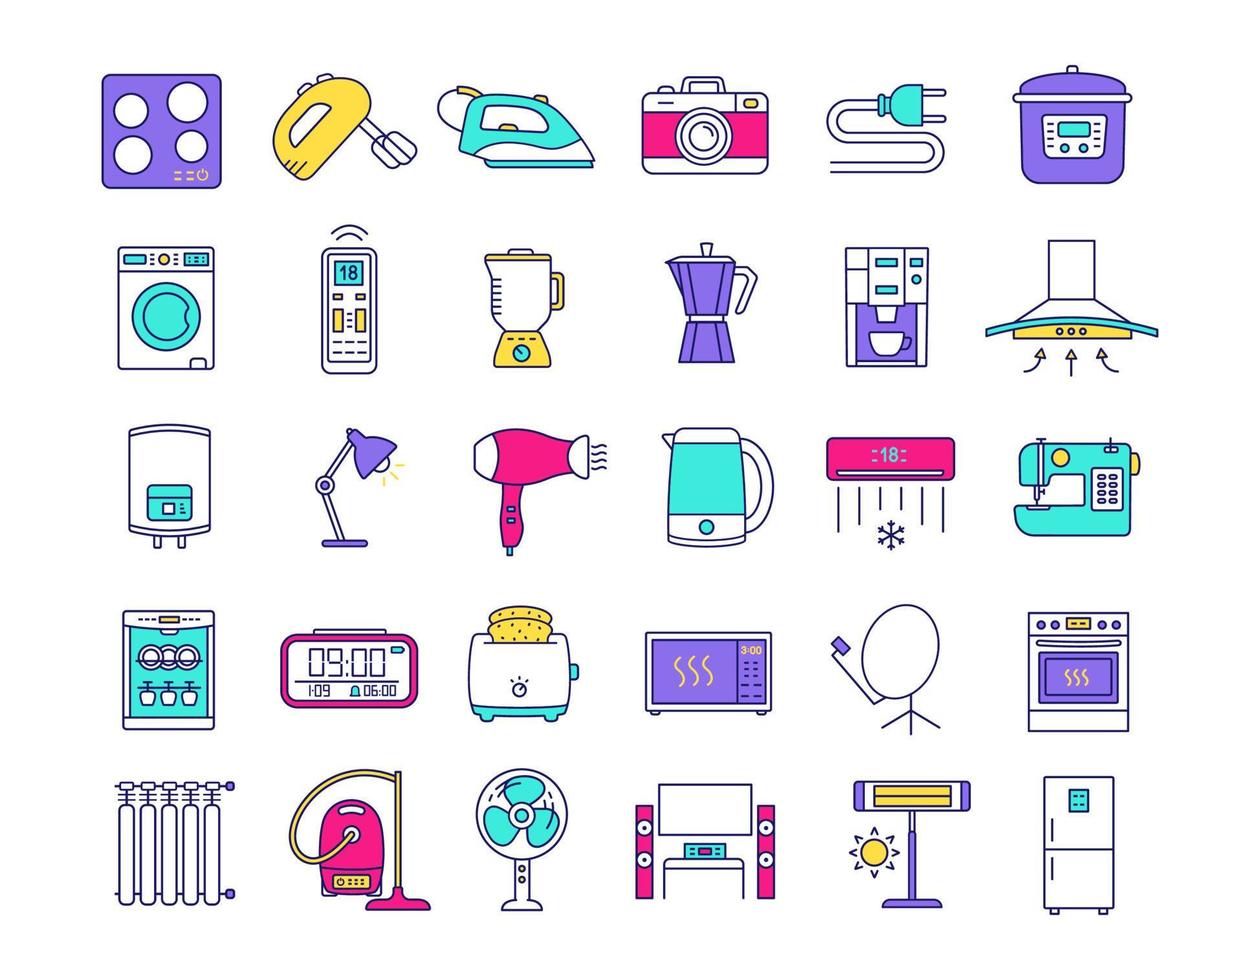 huishoudelijke apparaten kleur pictogrammen instellen. huis- en keukenelektronica. binnenlandse technologie. koelkast, stofzuiger, wasmachine, mixer, vaatwasser, oven, fornuis. geïsoleerde vectorillustraties vector